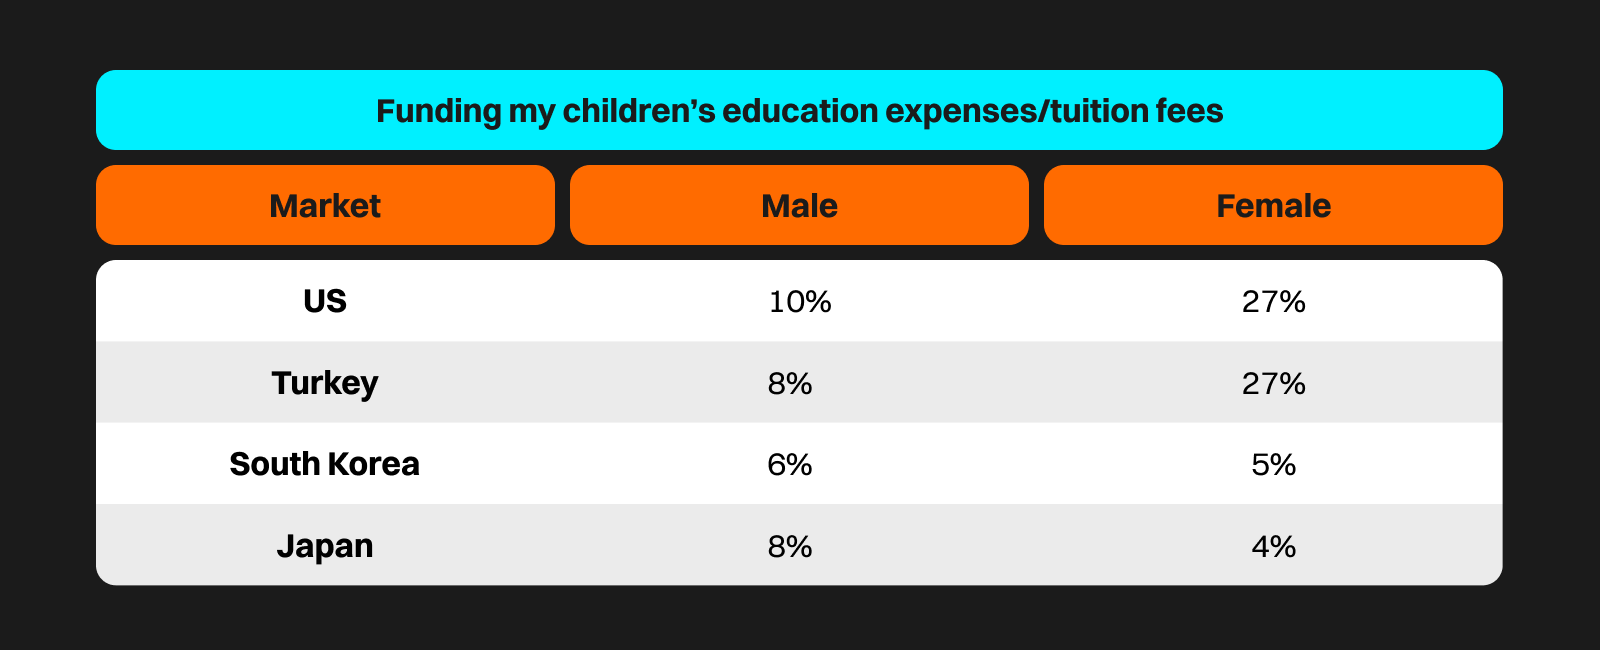 Průzkum: Investování za účelem zajištění zdrojů na vzdělání dětí podle pohlaví (zdroj: bitget.com).